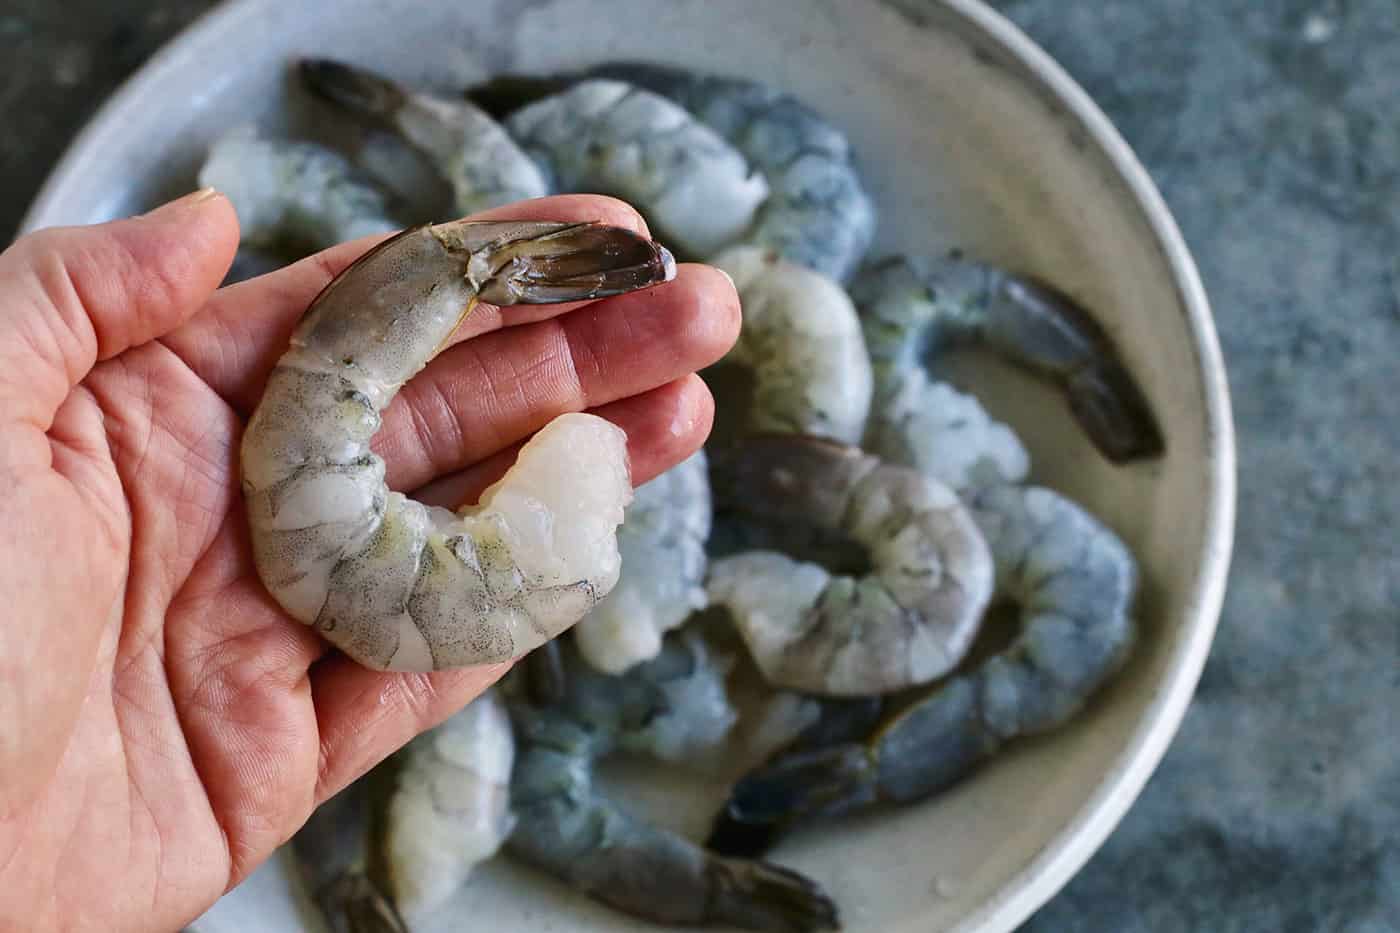 A hand holding a jumbo shrimp